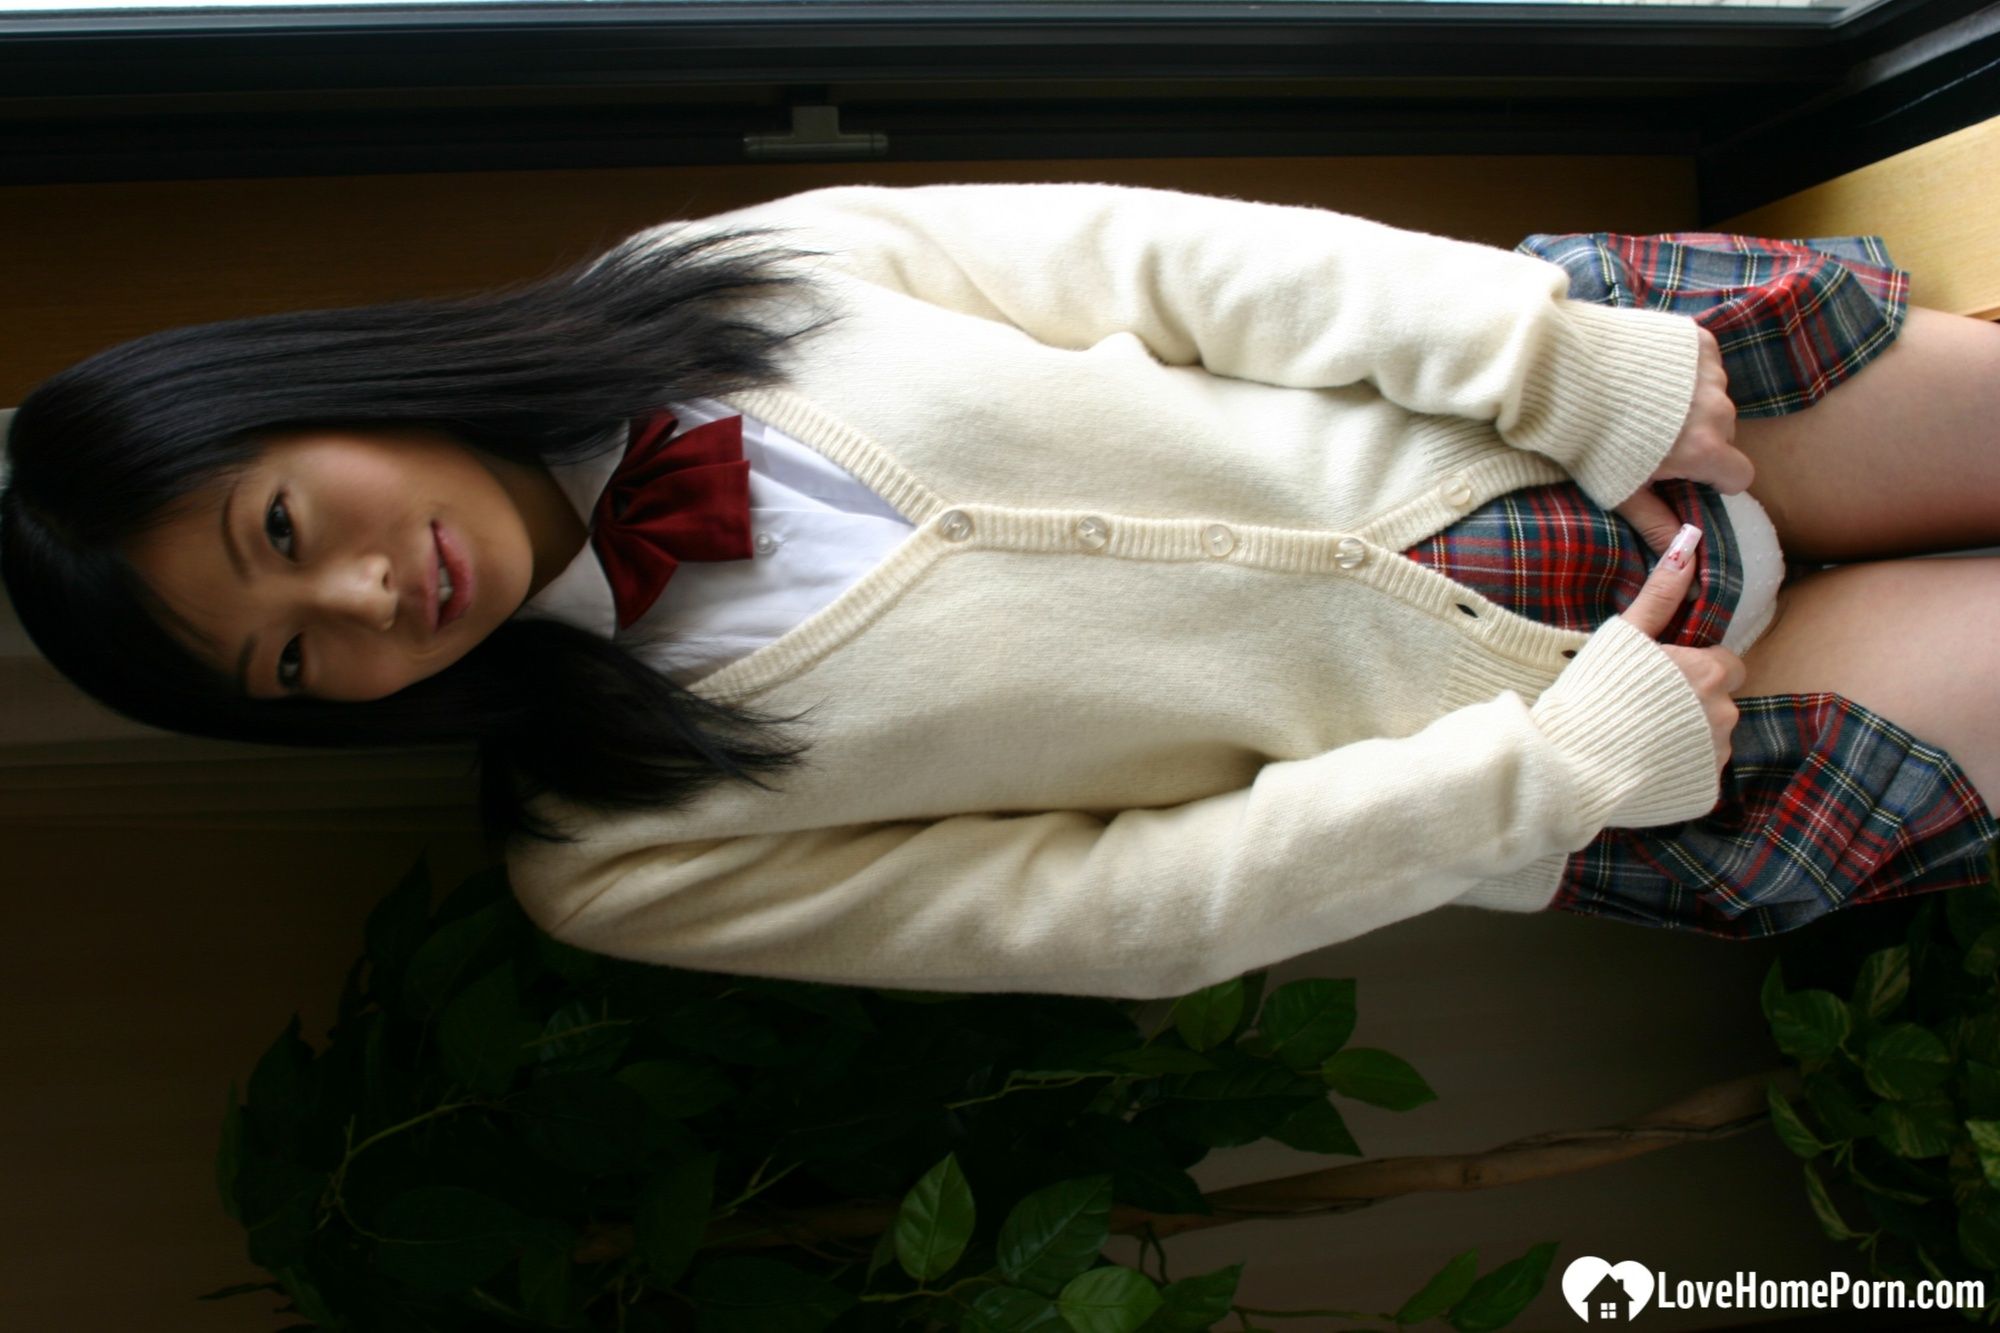 Asian schoolgirl looks for some online exposure #48